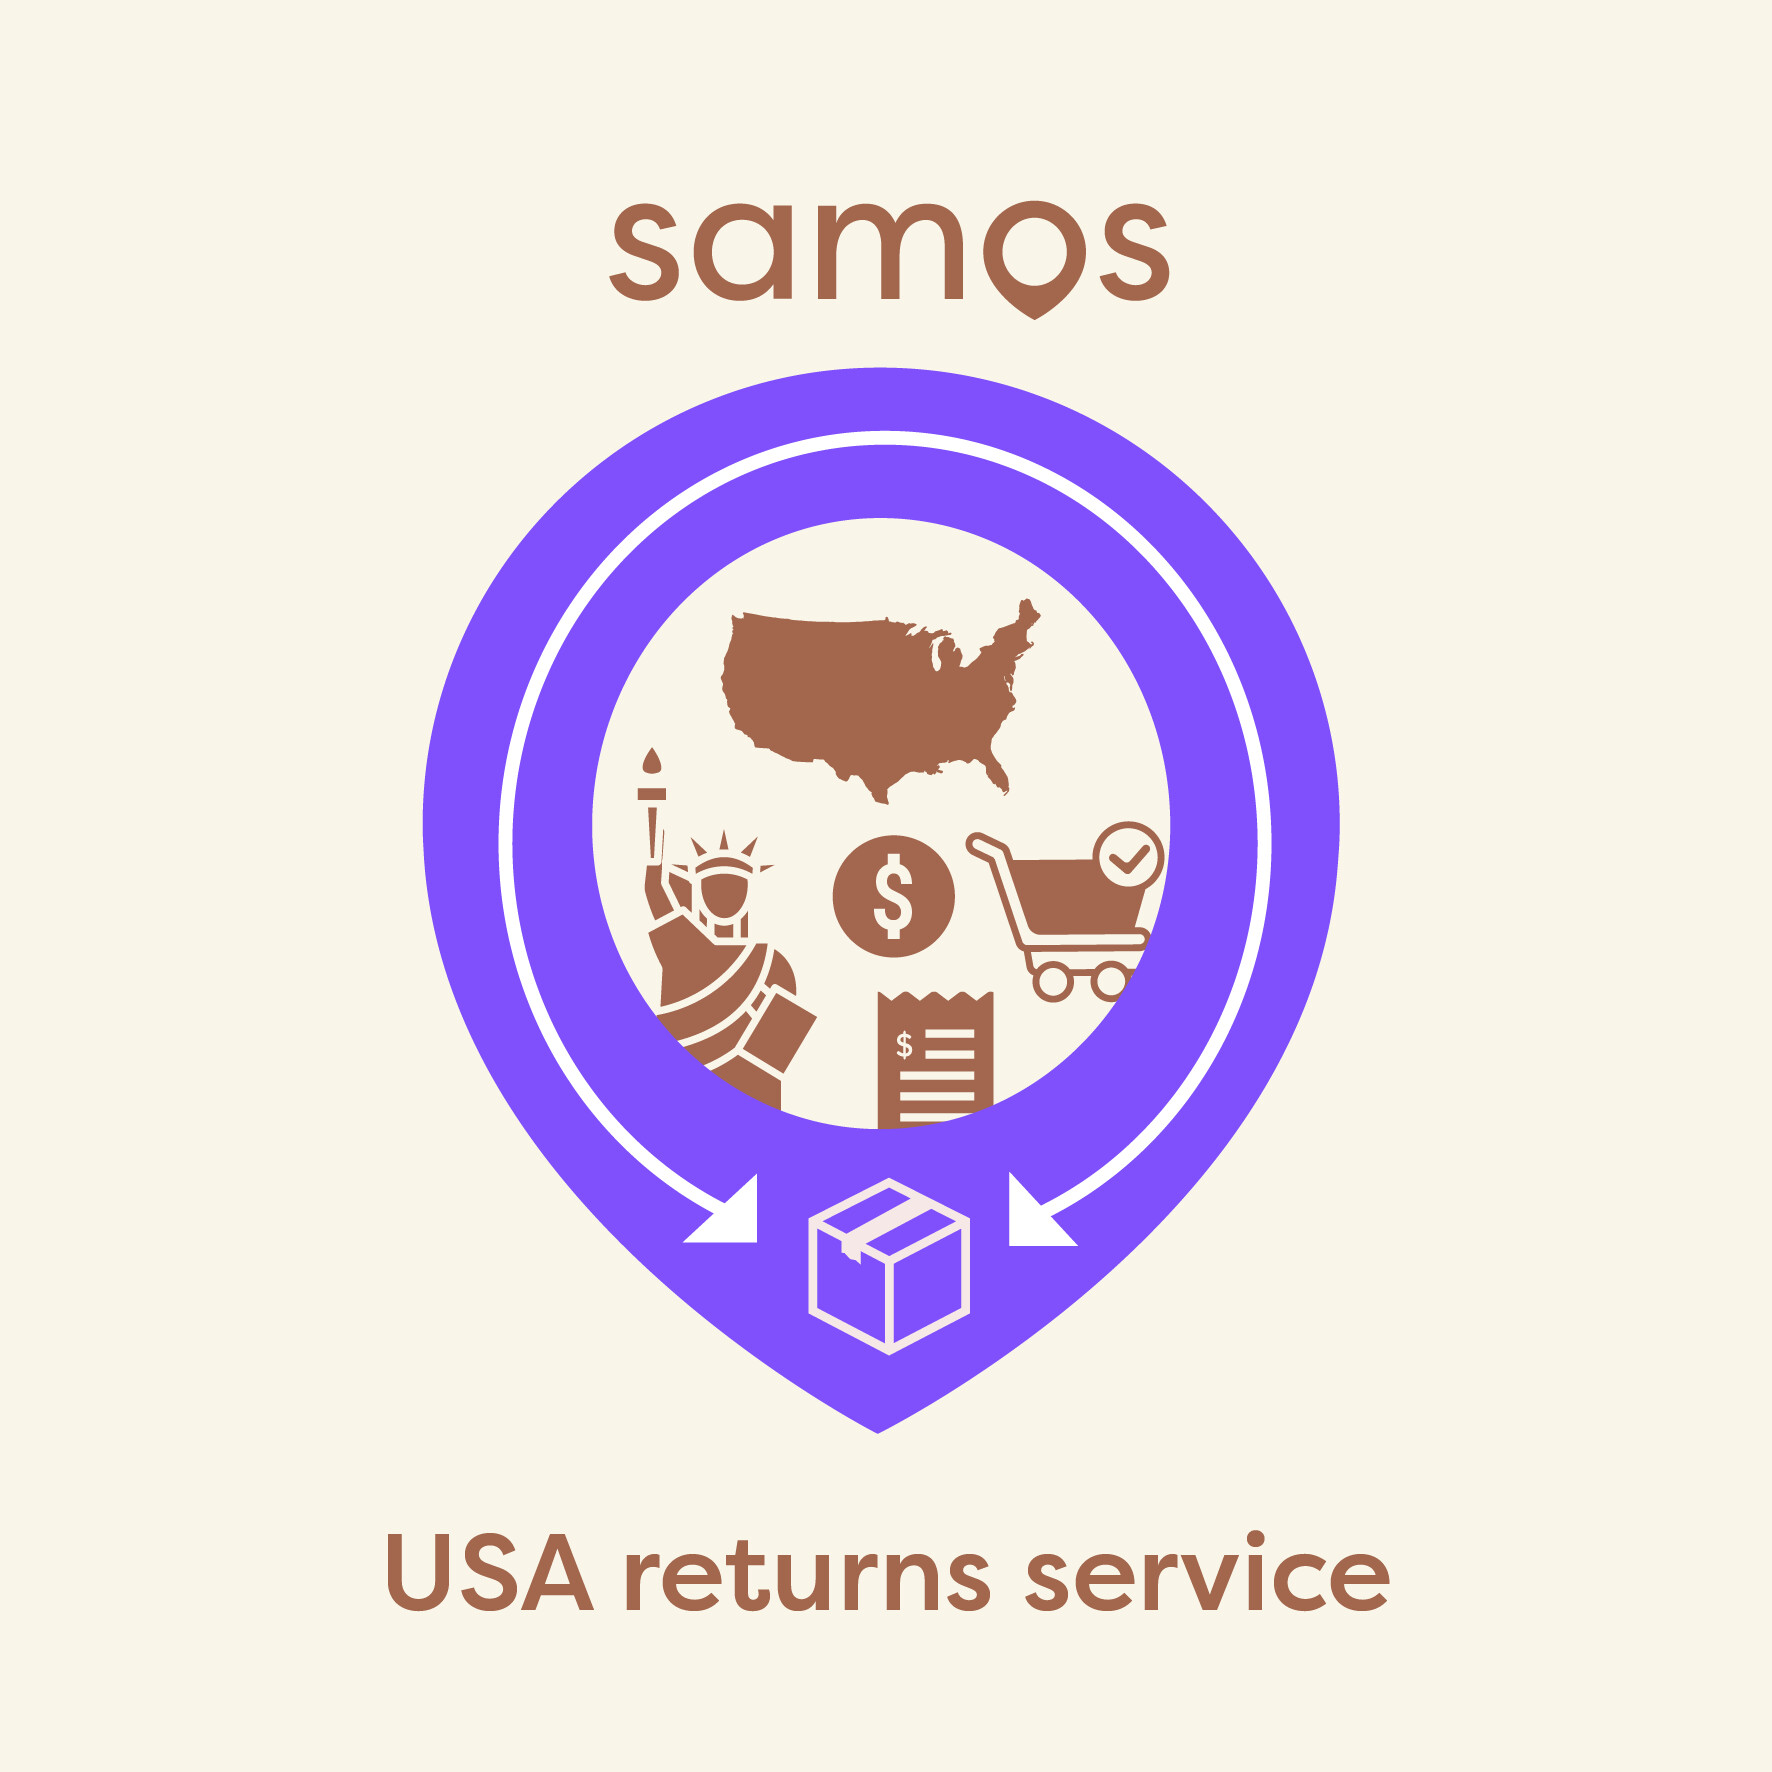 SAMOS USA return service